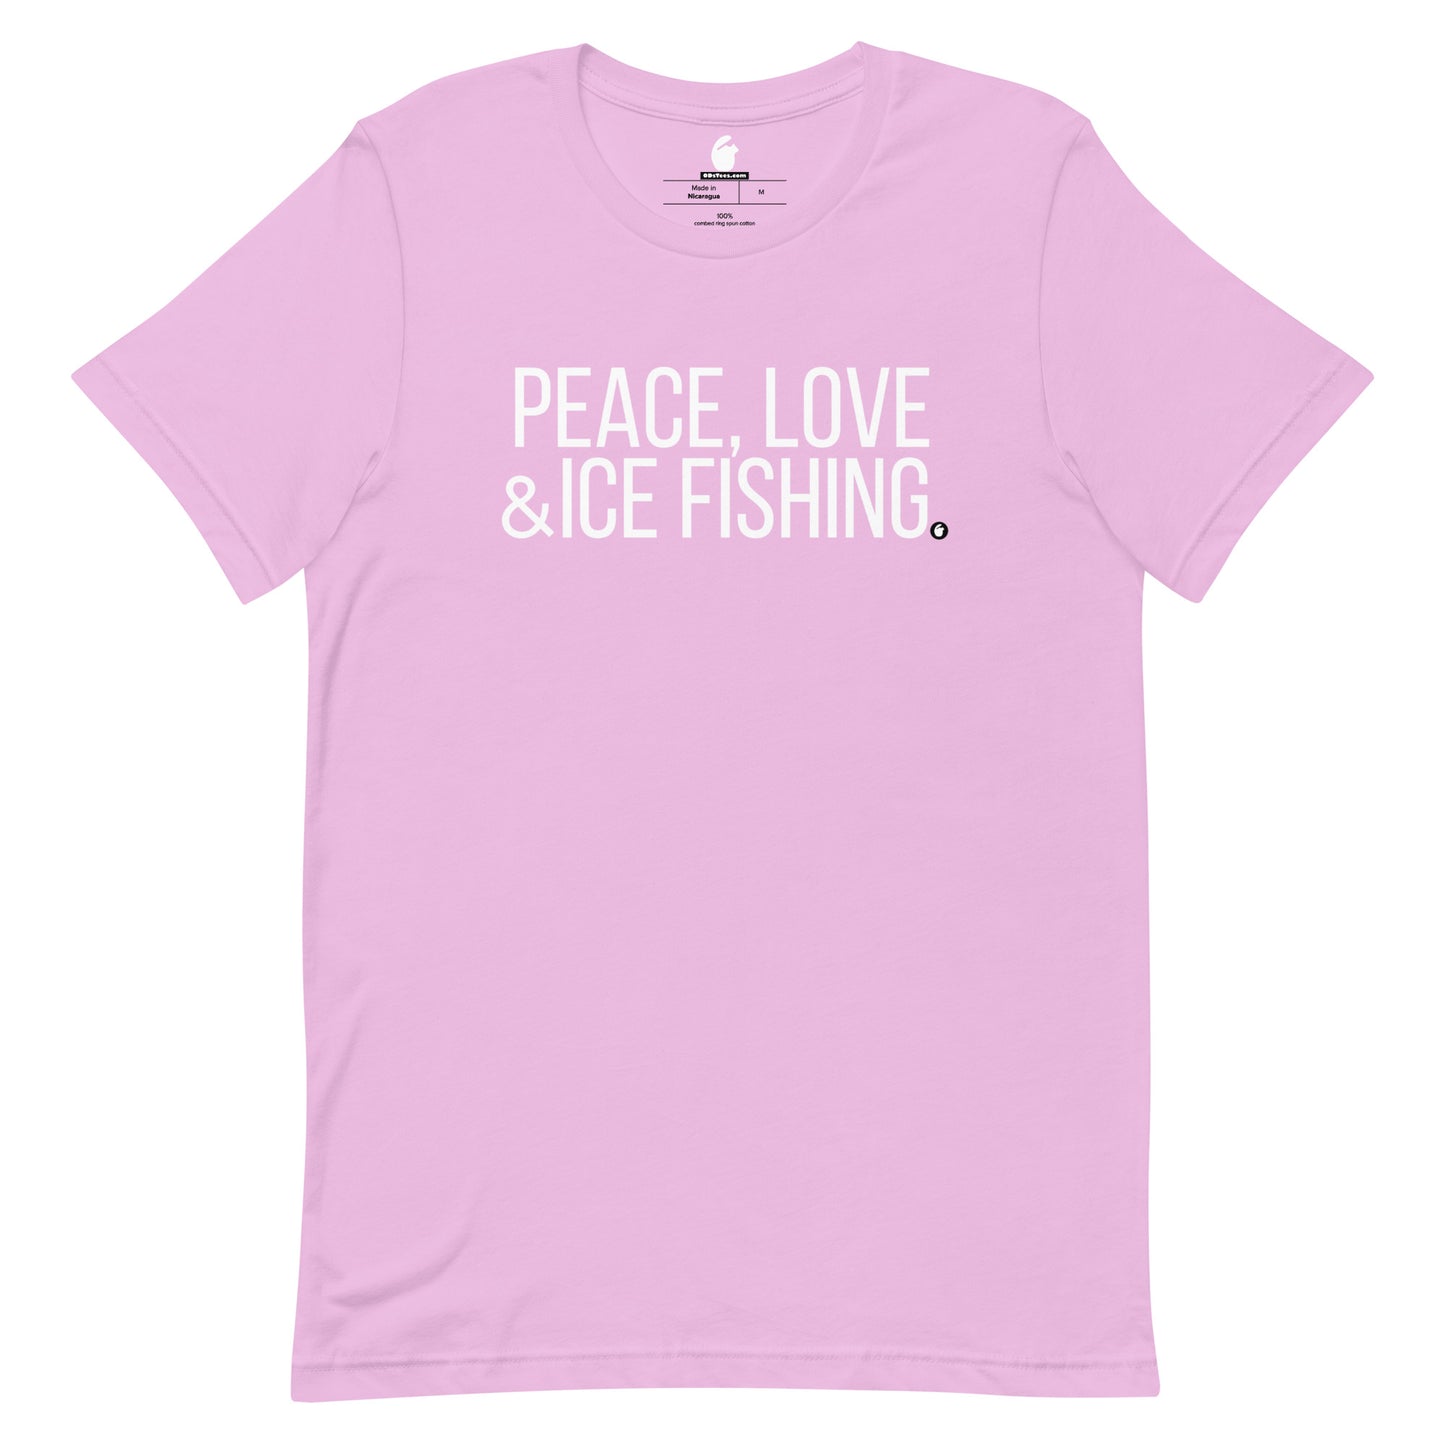 ICE FISHING Short-Sleeve Unisex t-shirt